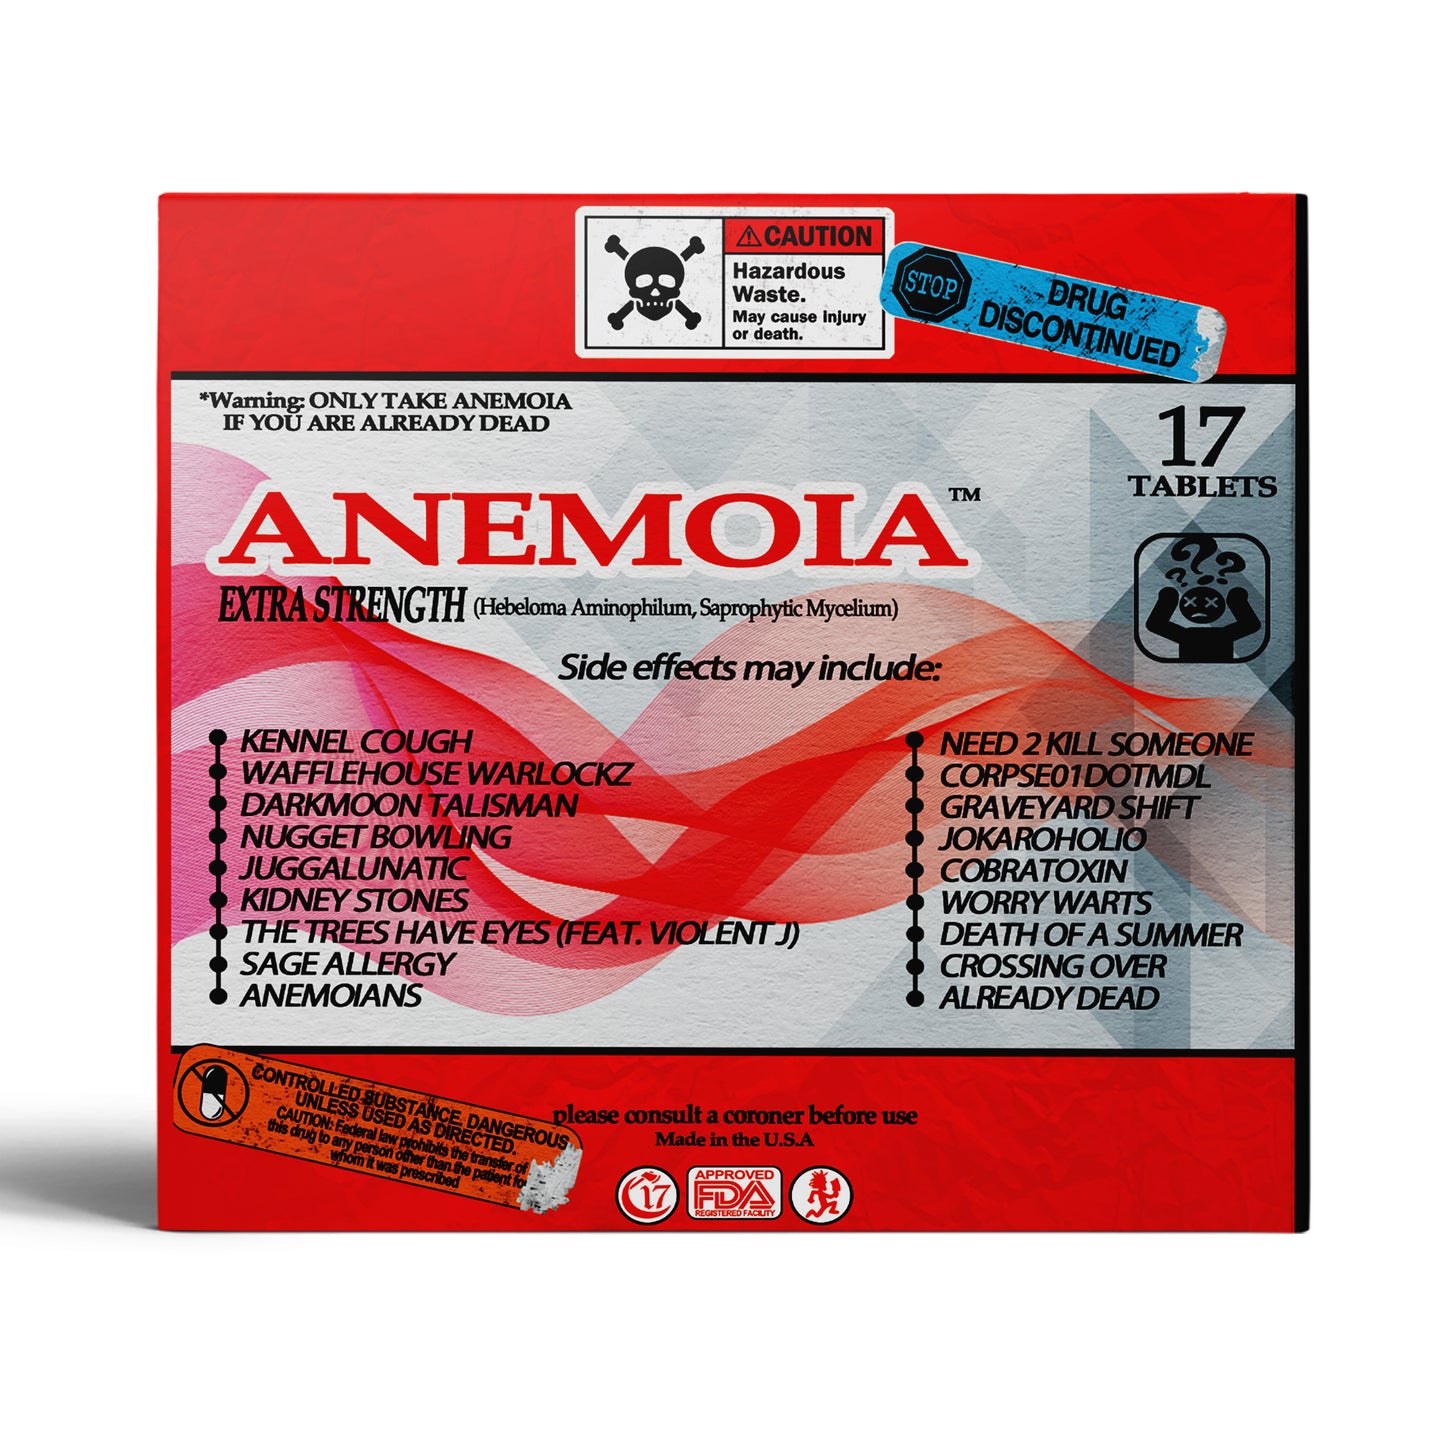 CD - Anemoia - Ouija Macc & Darby O'Trill